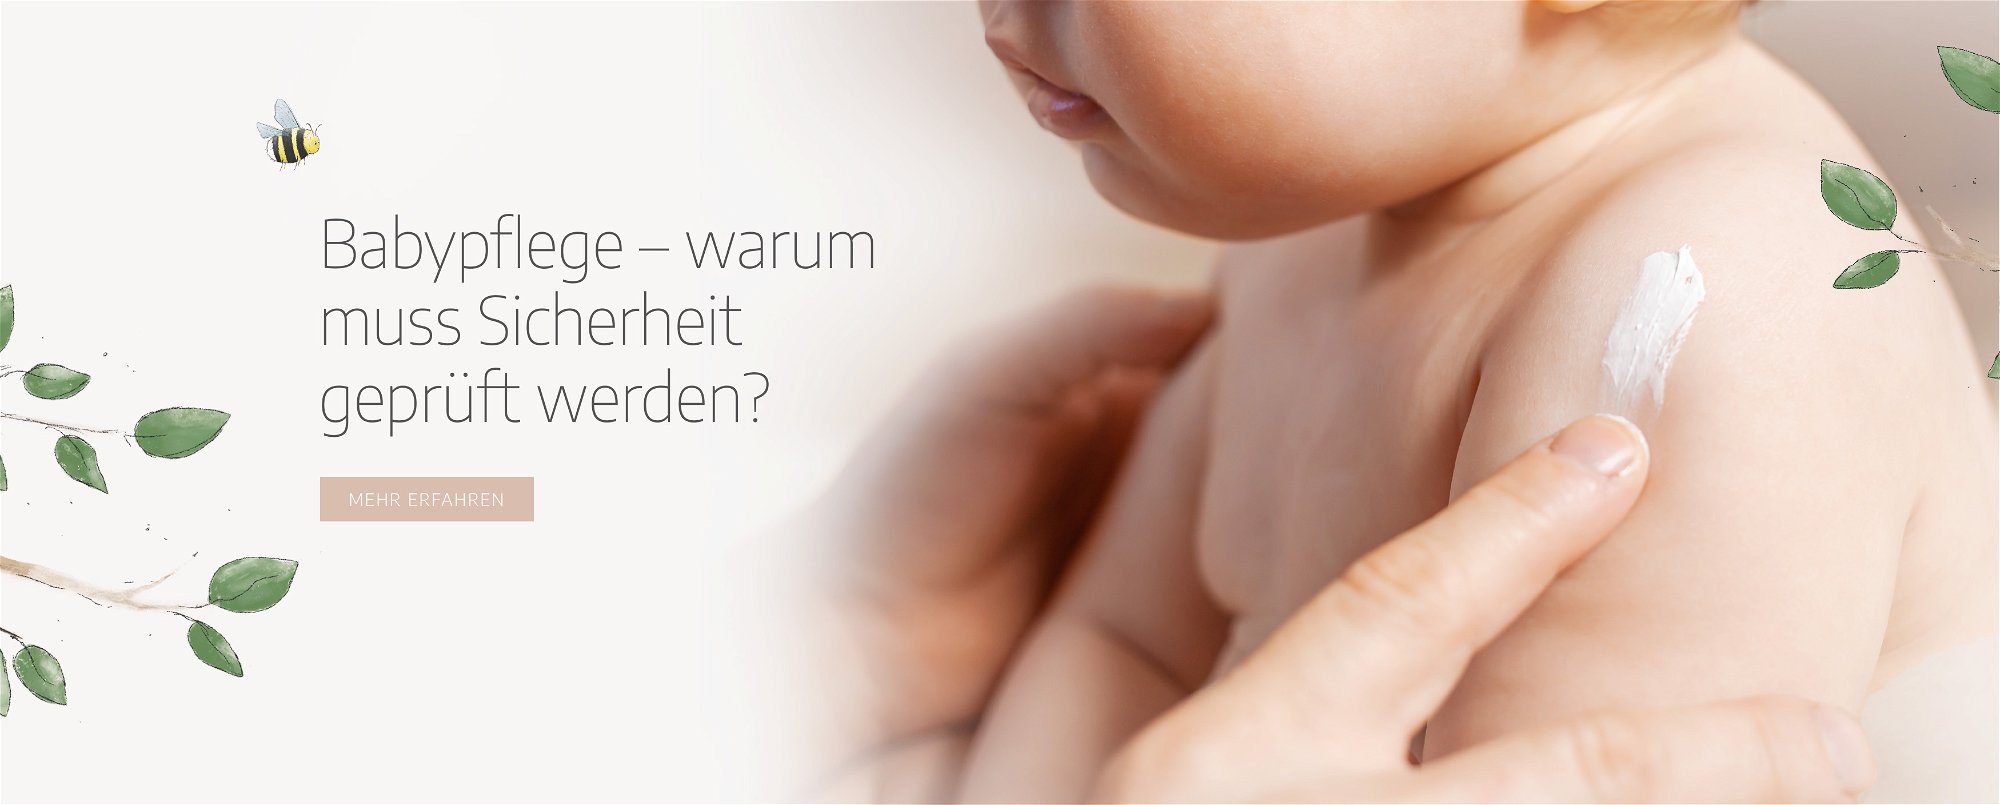 Babypflege – warum muss Sicherheit geprüft werden?